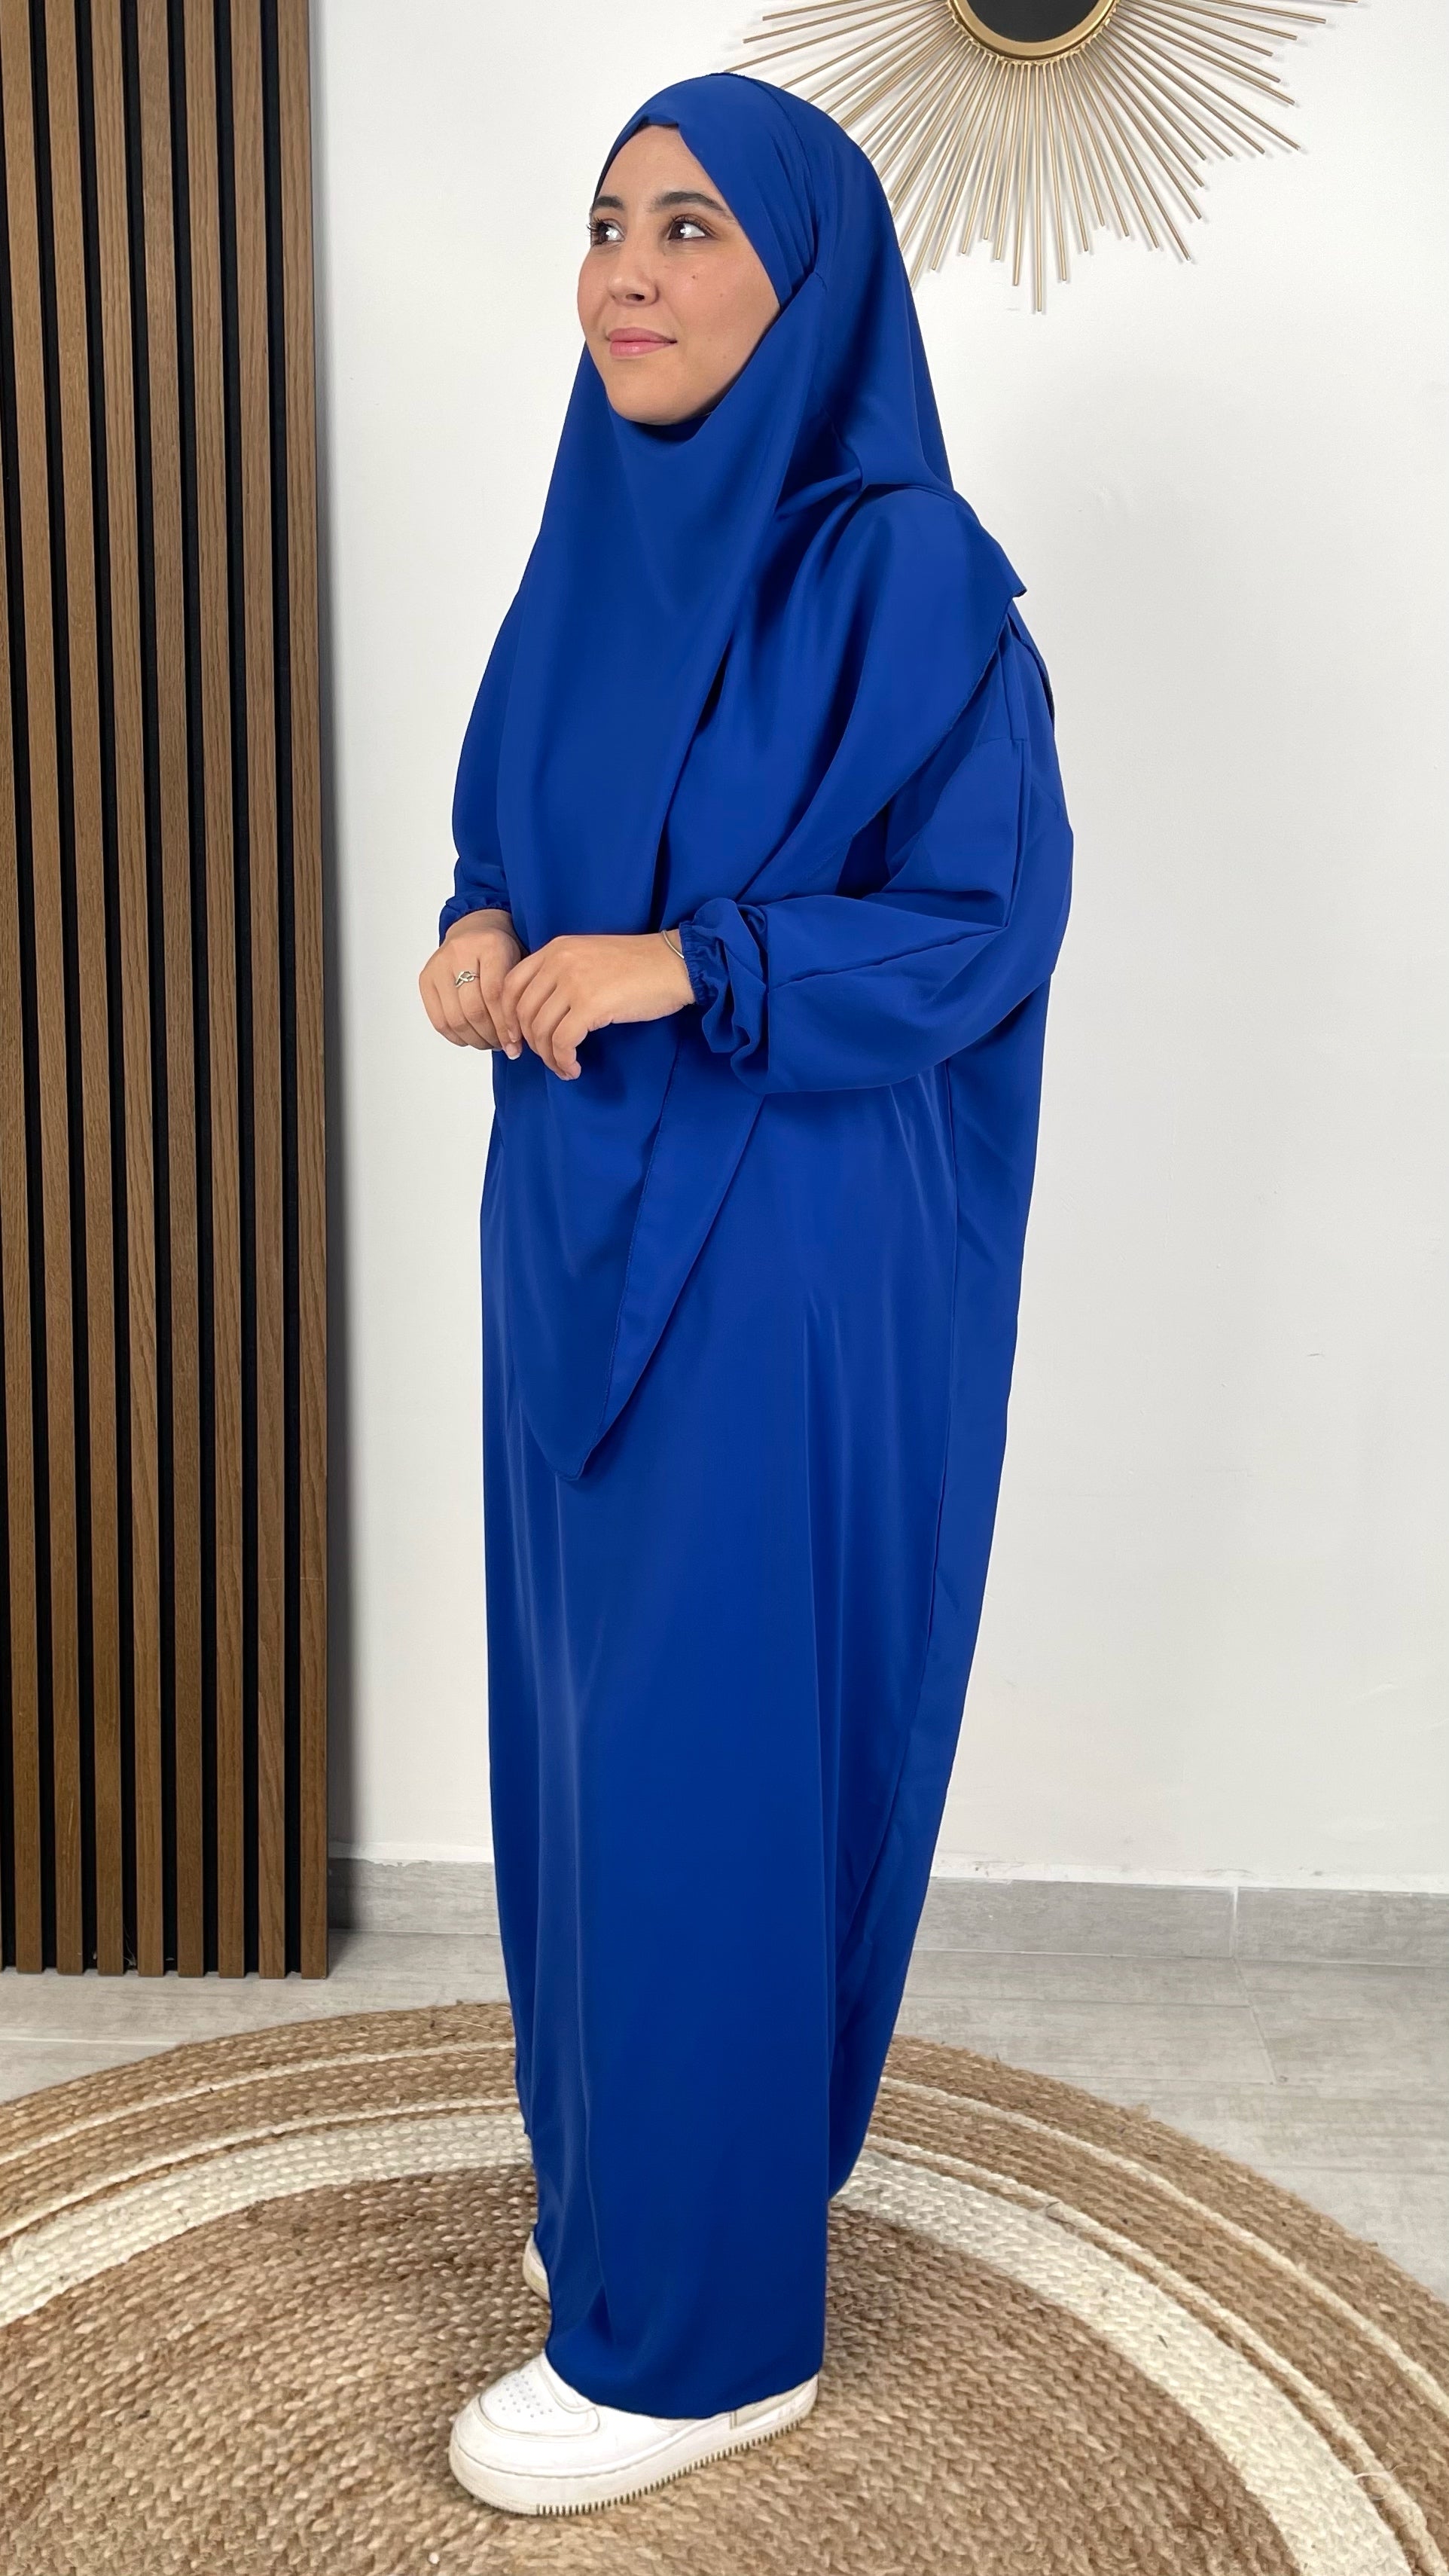 Tasbih électronique LED avec étui – Hijab Paradise